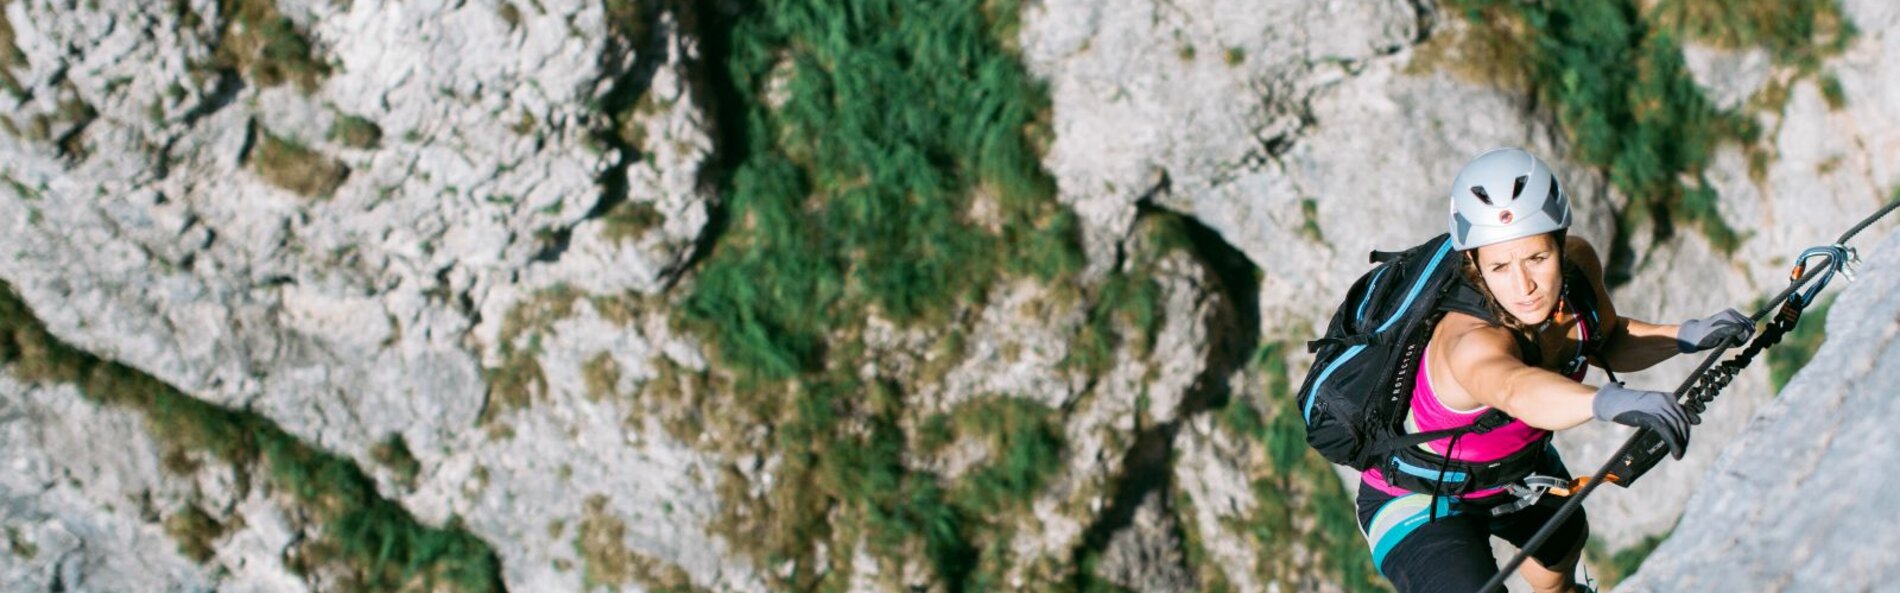 Frau klettert entlang eines Drahtseiles. Im Hintergrund sieht man hellgrauen Fels.